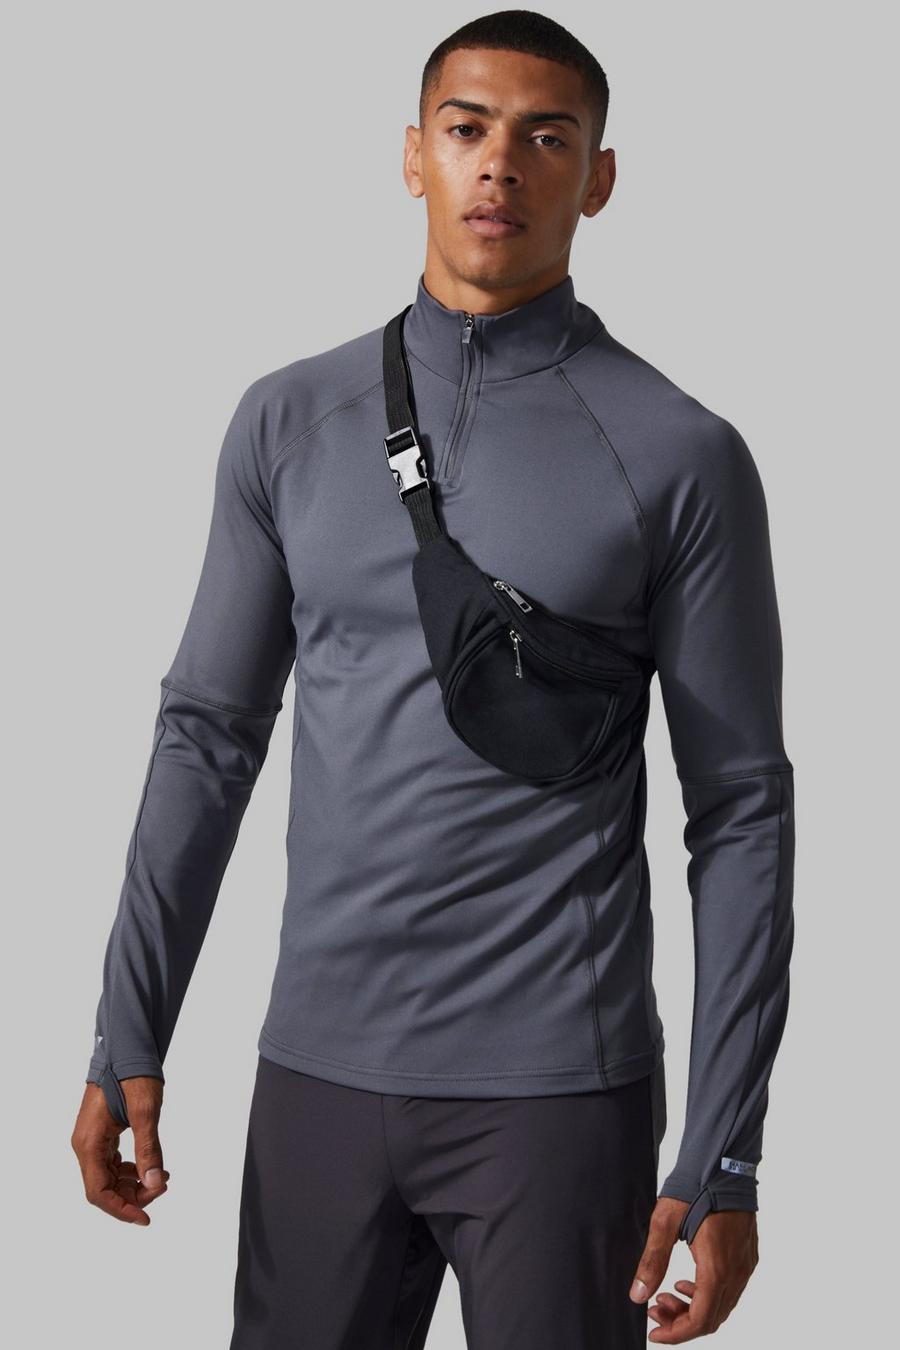 Charcoal grigio חולצה ספורטיבית צמודה לאימונים עם שרוולים ארוכים, 1/4 רוכסן וכיתוב Man